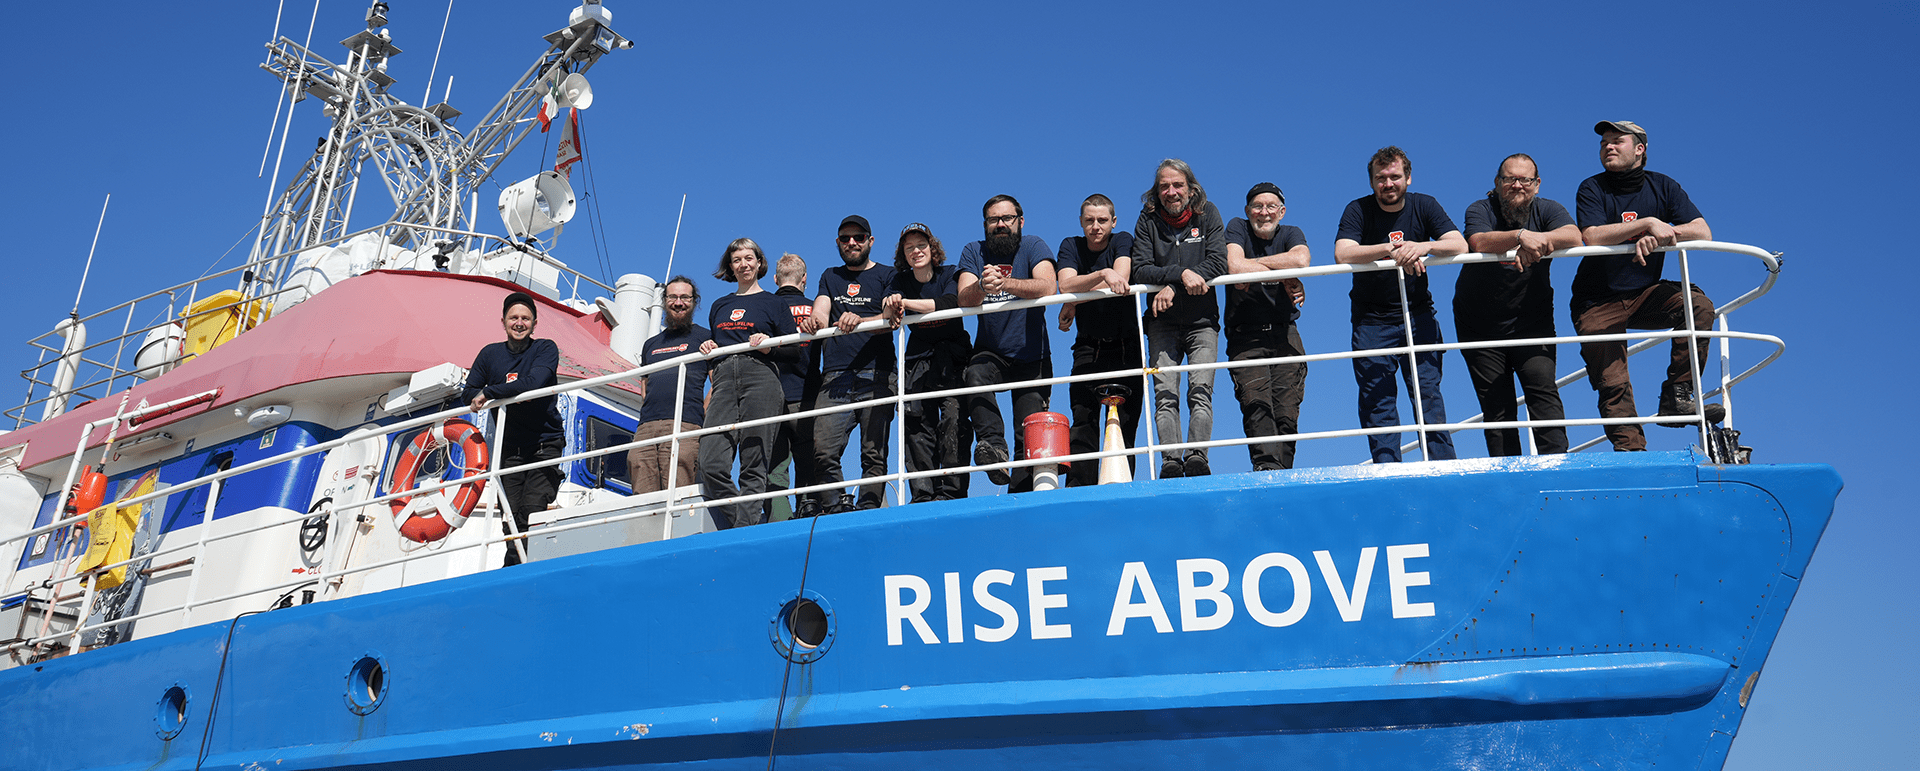 Mission Lifeline Werft crew der Rise Above